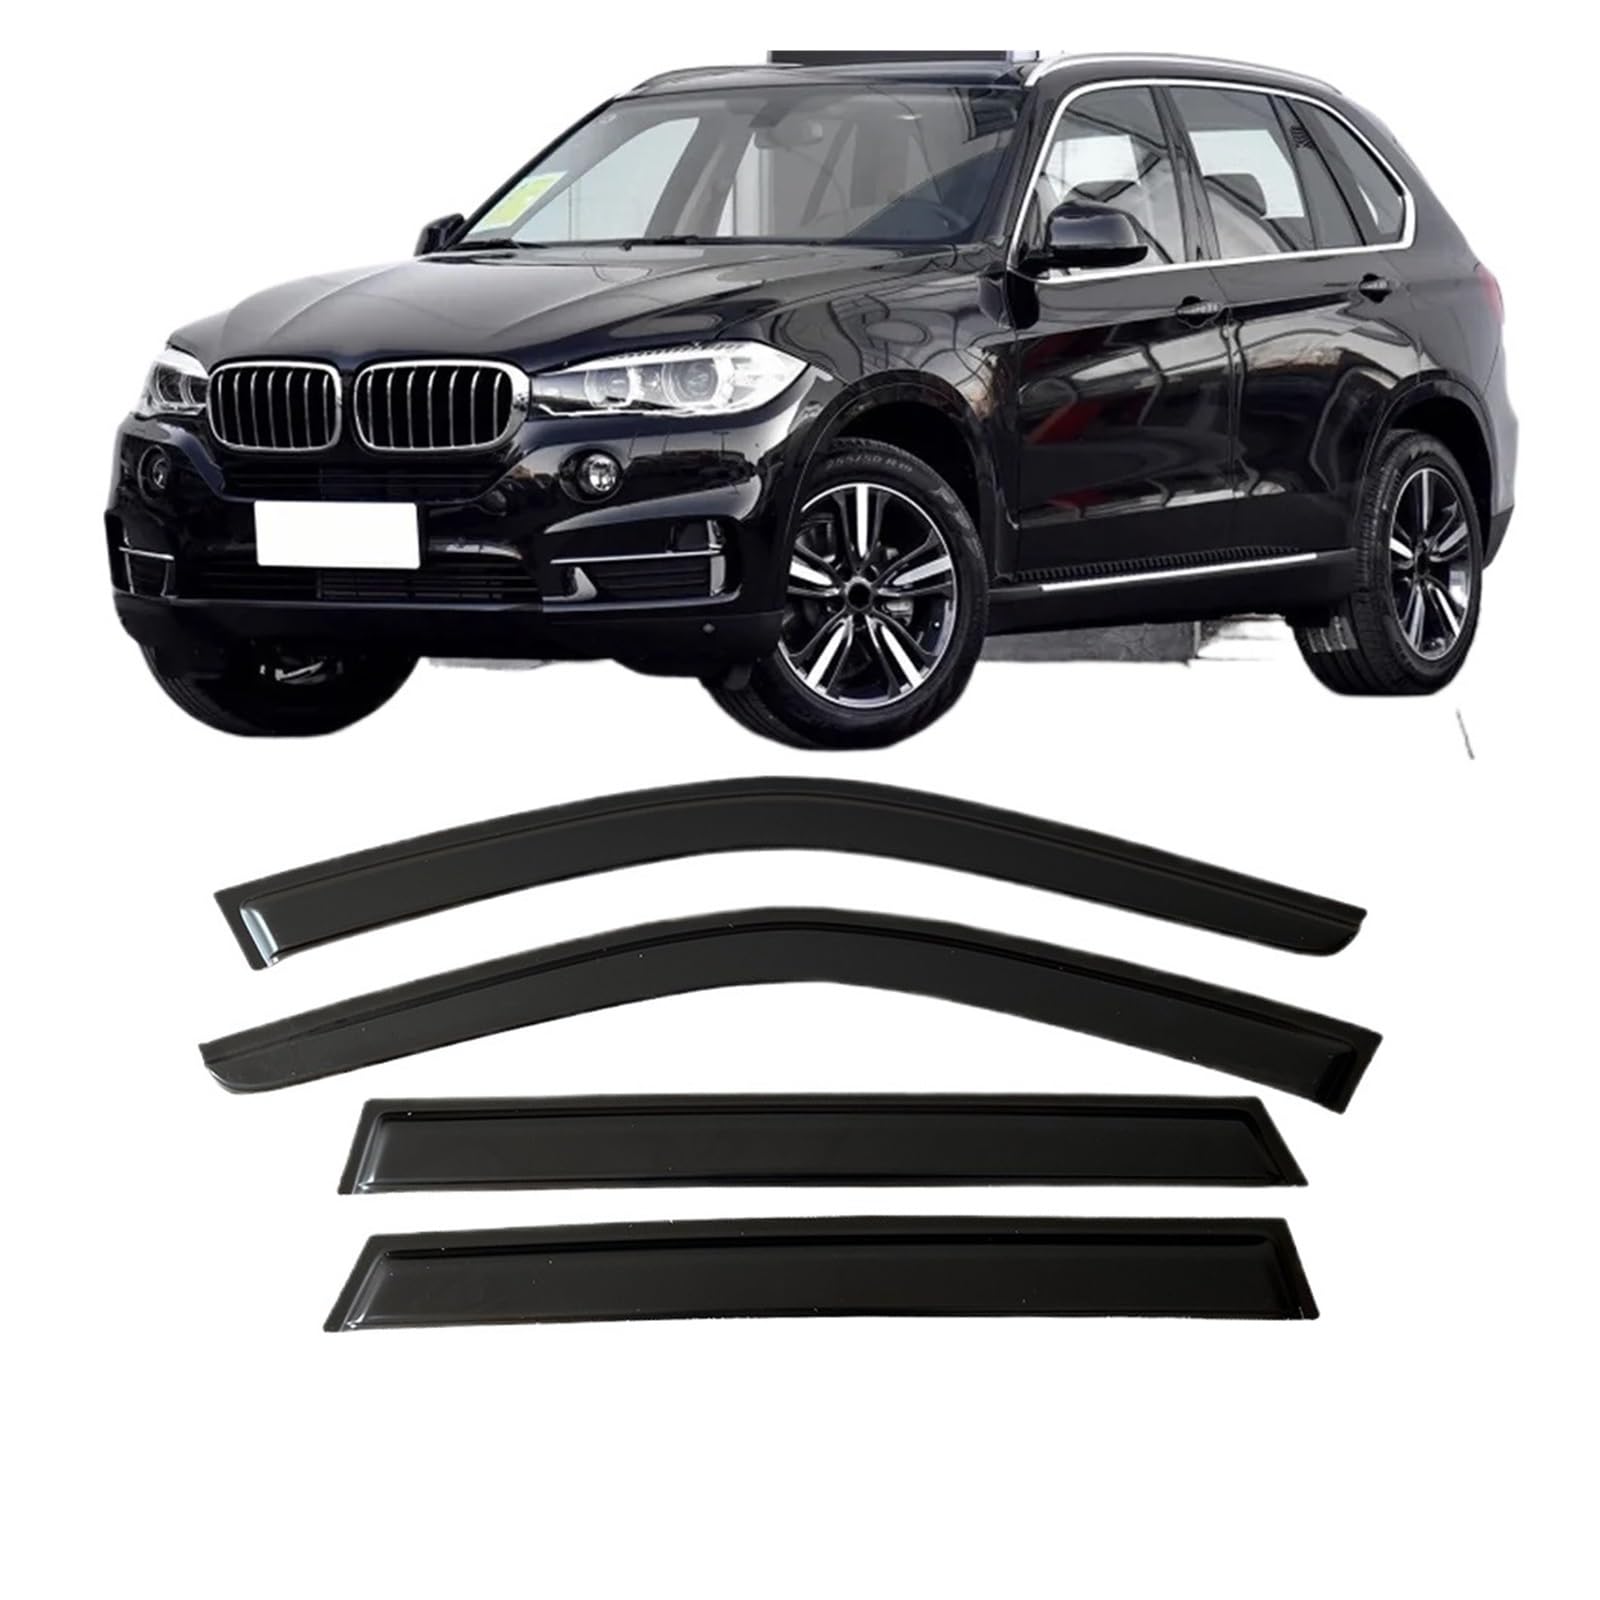 Kompatibel for BMW X5 F15 E53 E70 2000-2018 Auto Seitenfenster Windabweiser Visiere Regenschutz Türvisier Lüftungsschattierungen Dunkelschwarz Ventvisor(for X5 F15 2013-2018) von KDMOWHON